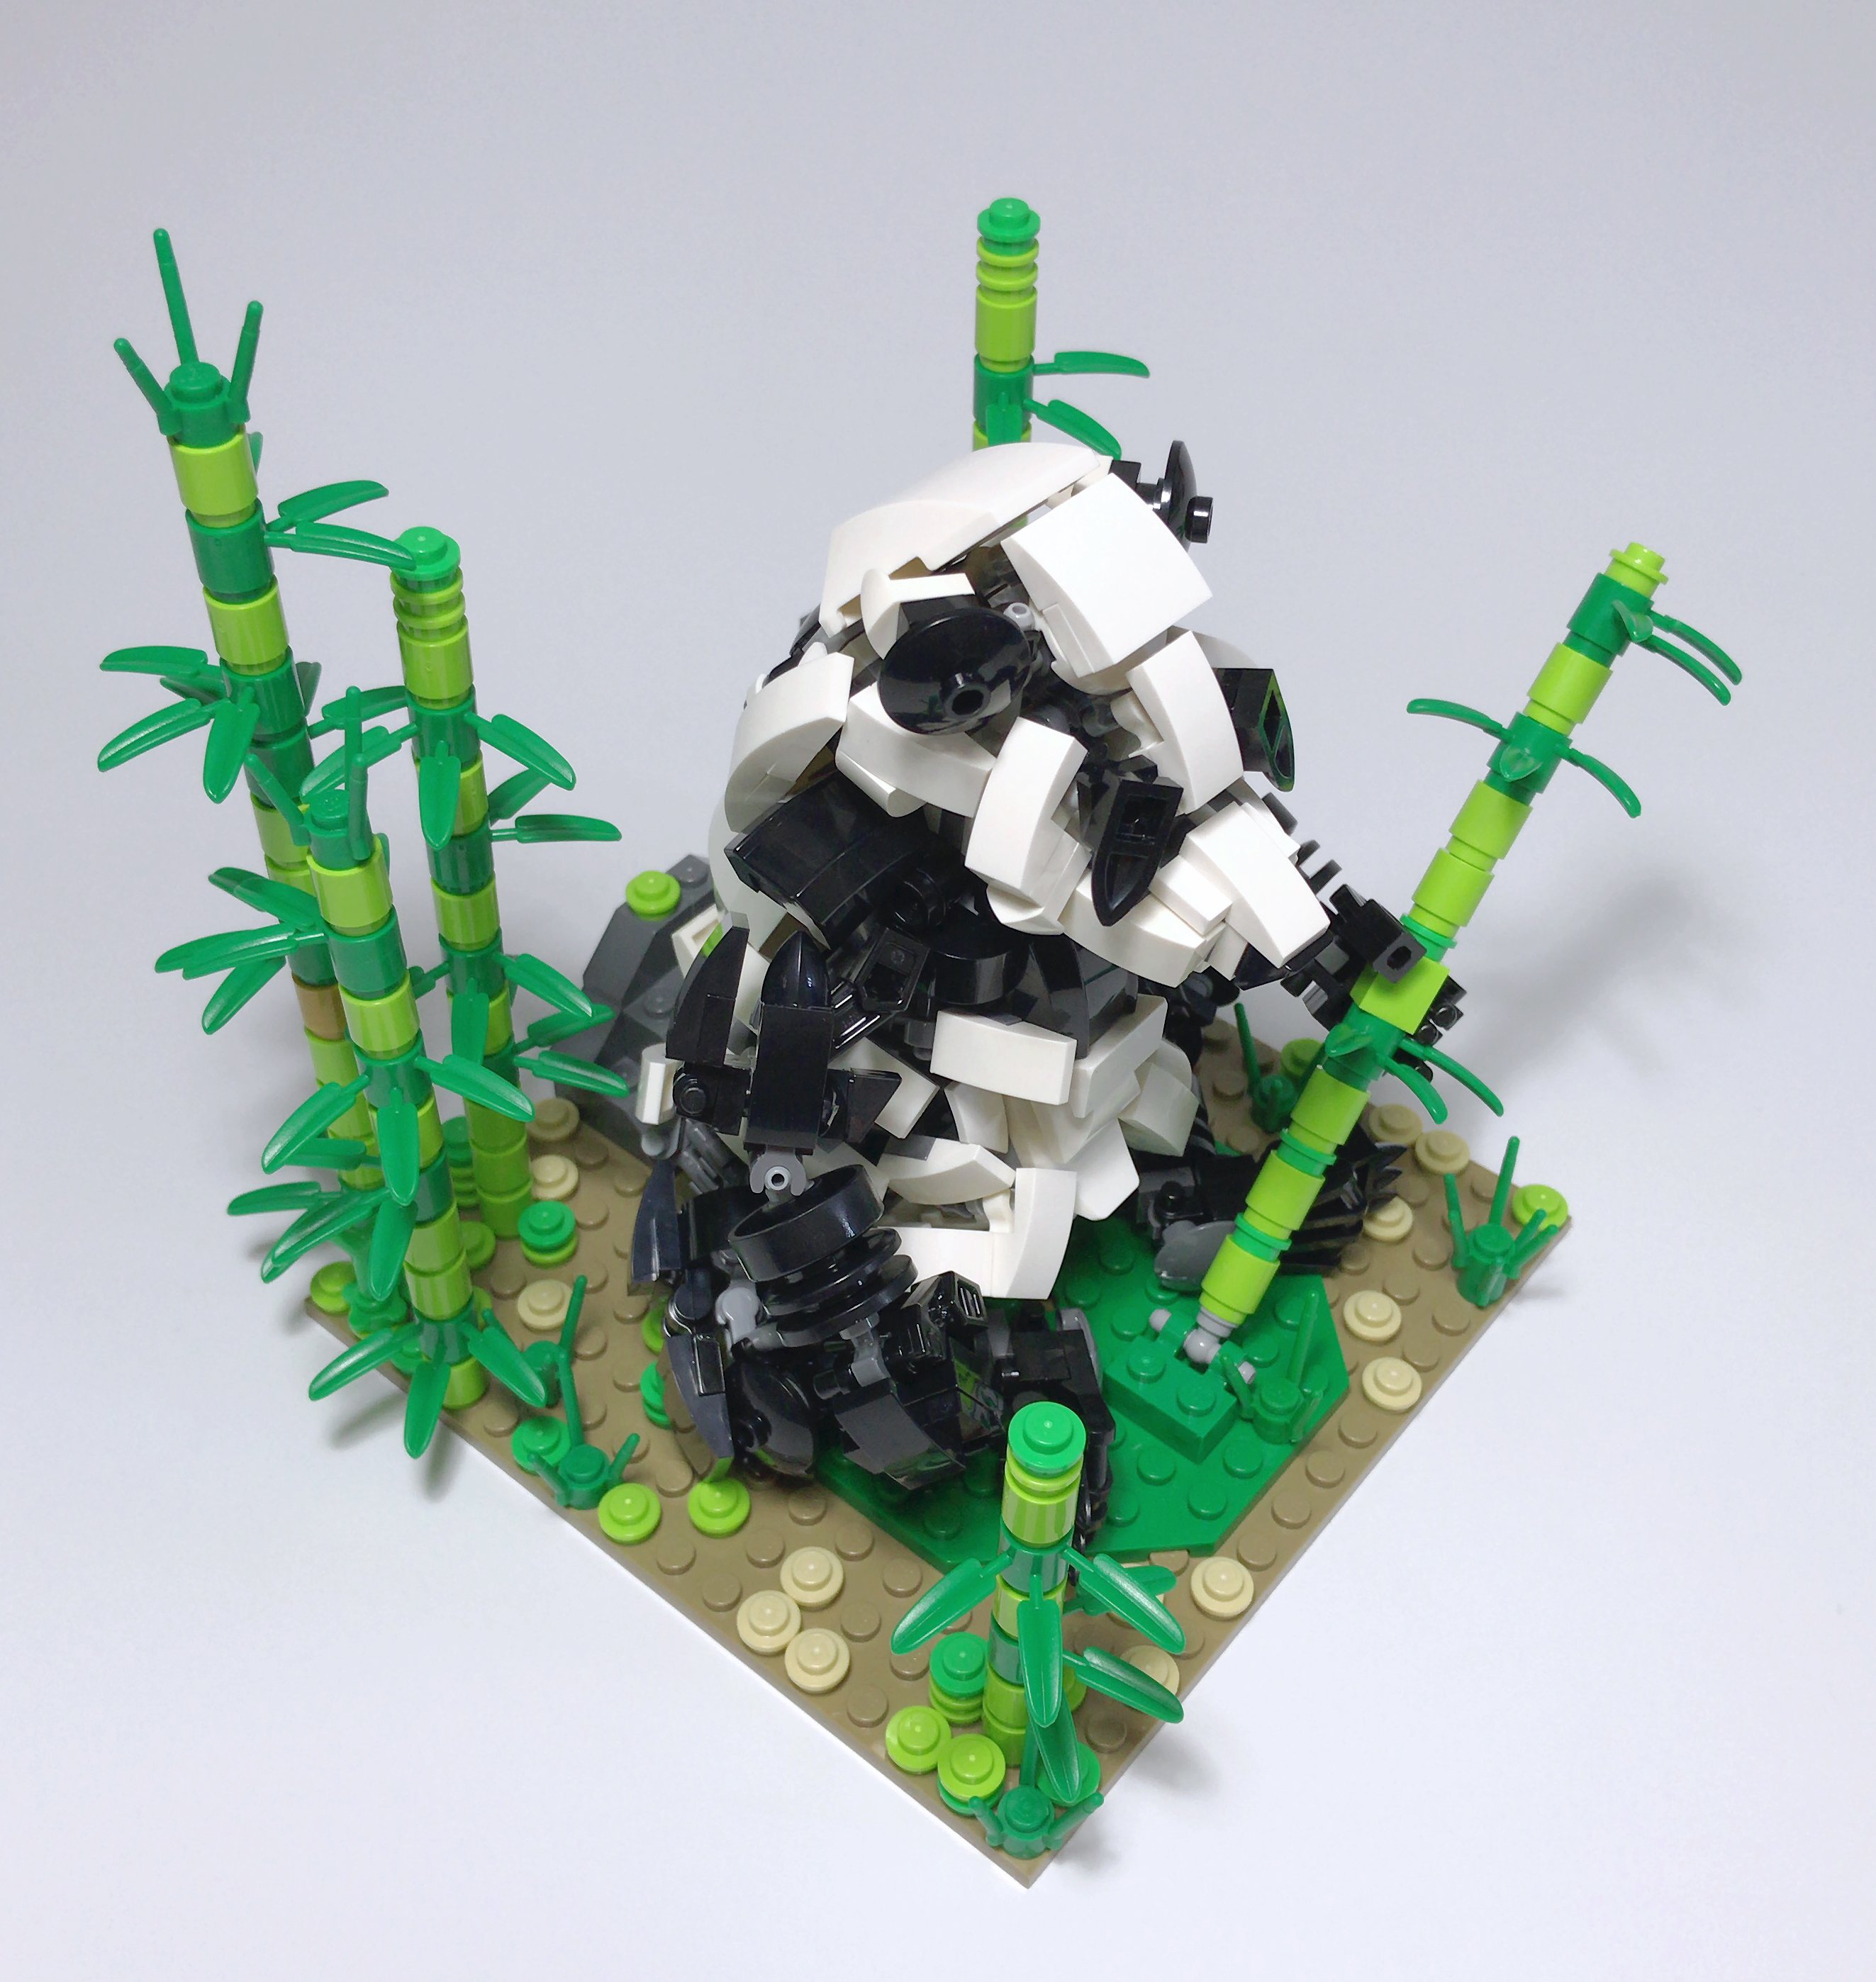 にかいどう 機械生物図鑑 Twitterissa パンダのシャンシャンが人気らしいので 僕の作ったレゴパンダもご覧ください レゴ Lego パンダ シャンシャン T Co Gsspmf8d5u Twitter